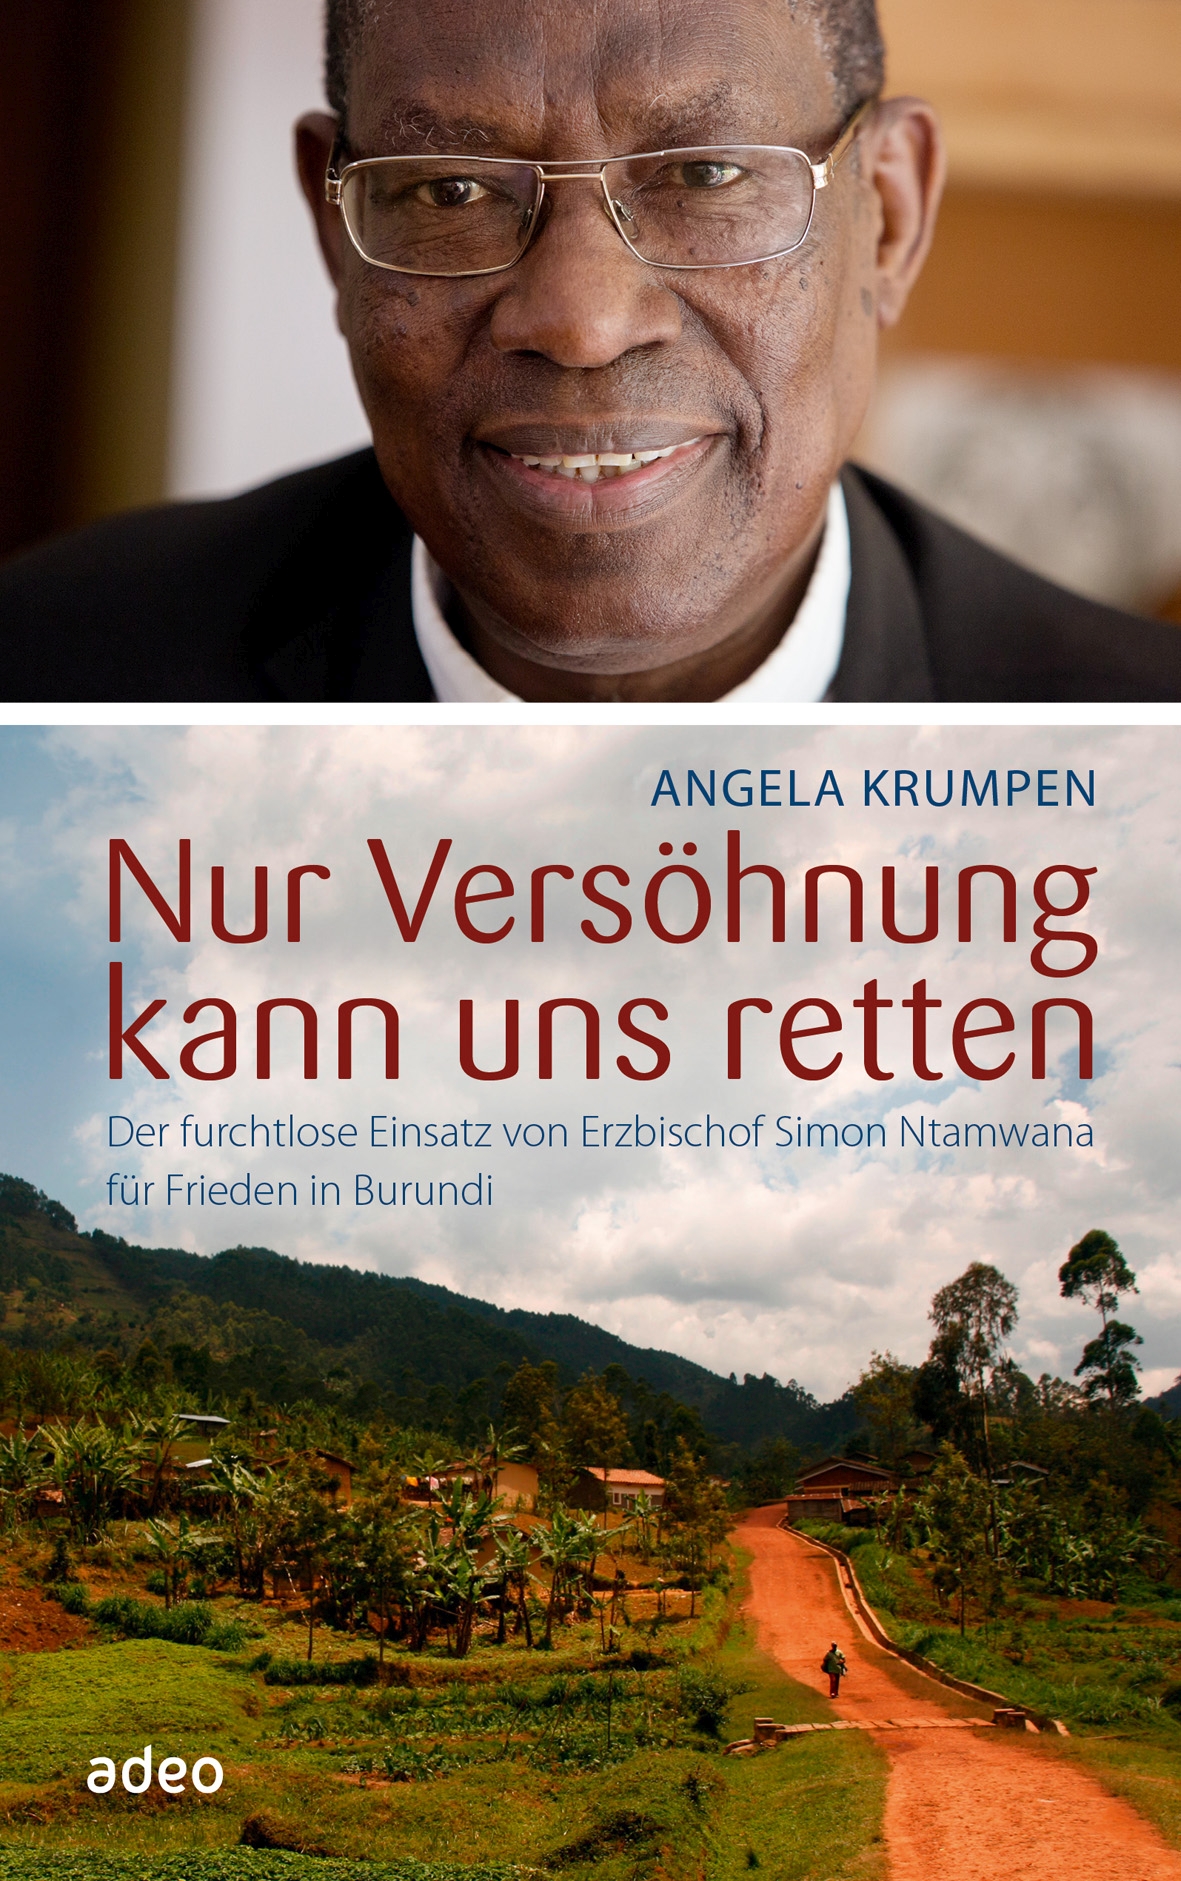 Cover_Angela Krumpen_Nur Versöhnung kann uns retten (c) Adeo-Verlag